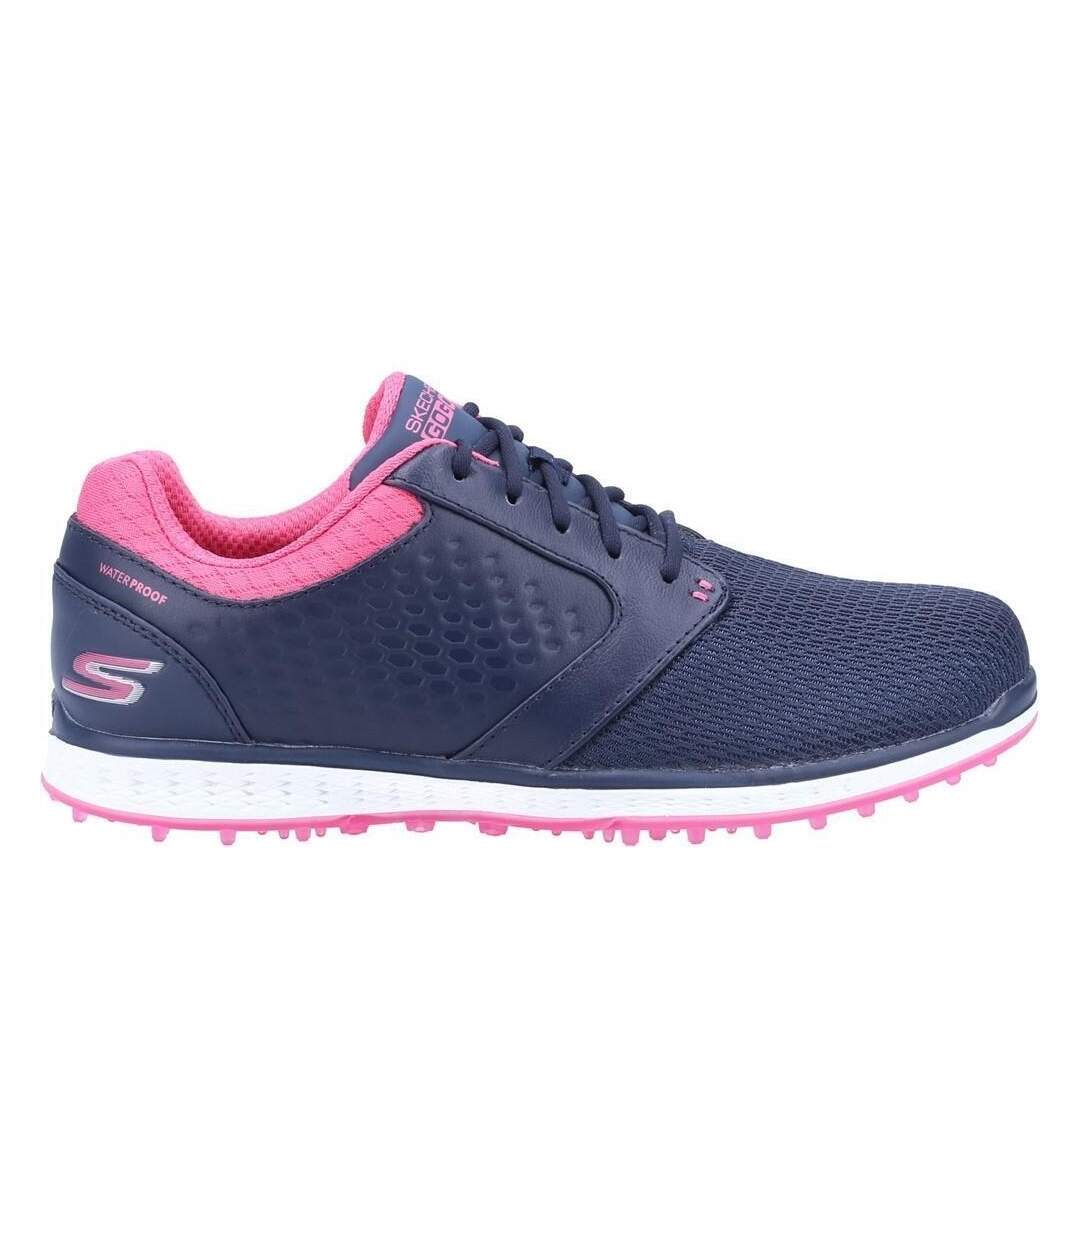 Skechers Womens/Ladies Elite 3 Grand Leather Sneakers (Navy/Pink) - UTFS7841